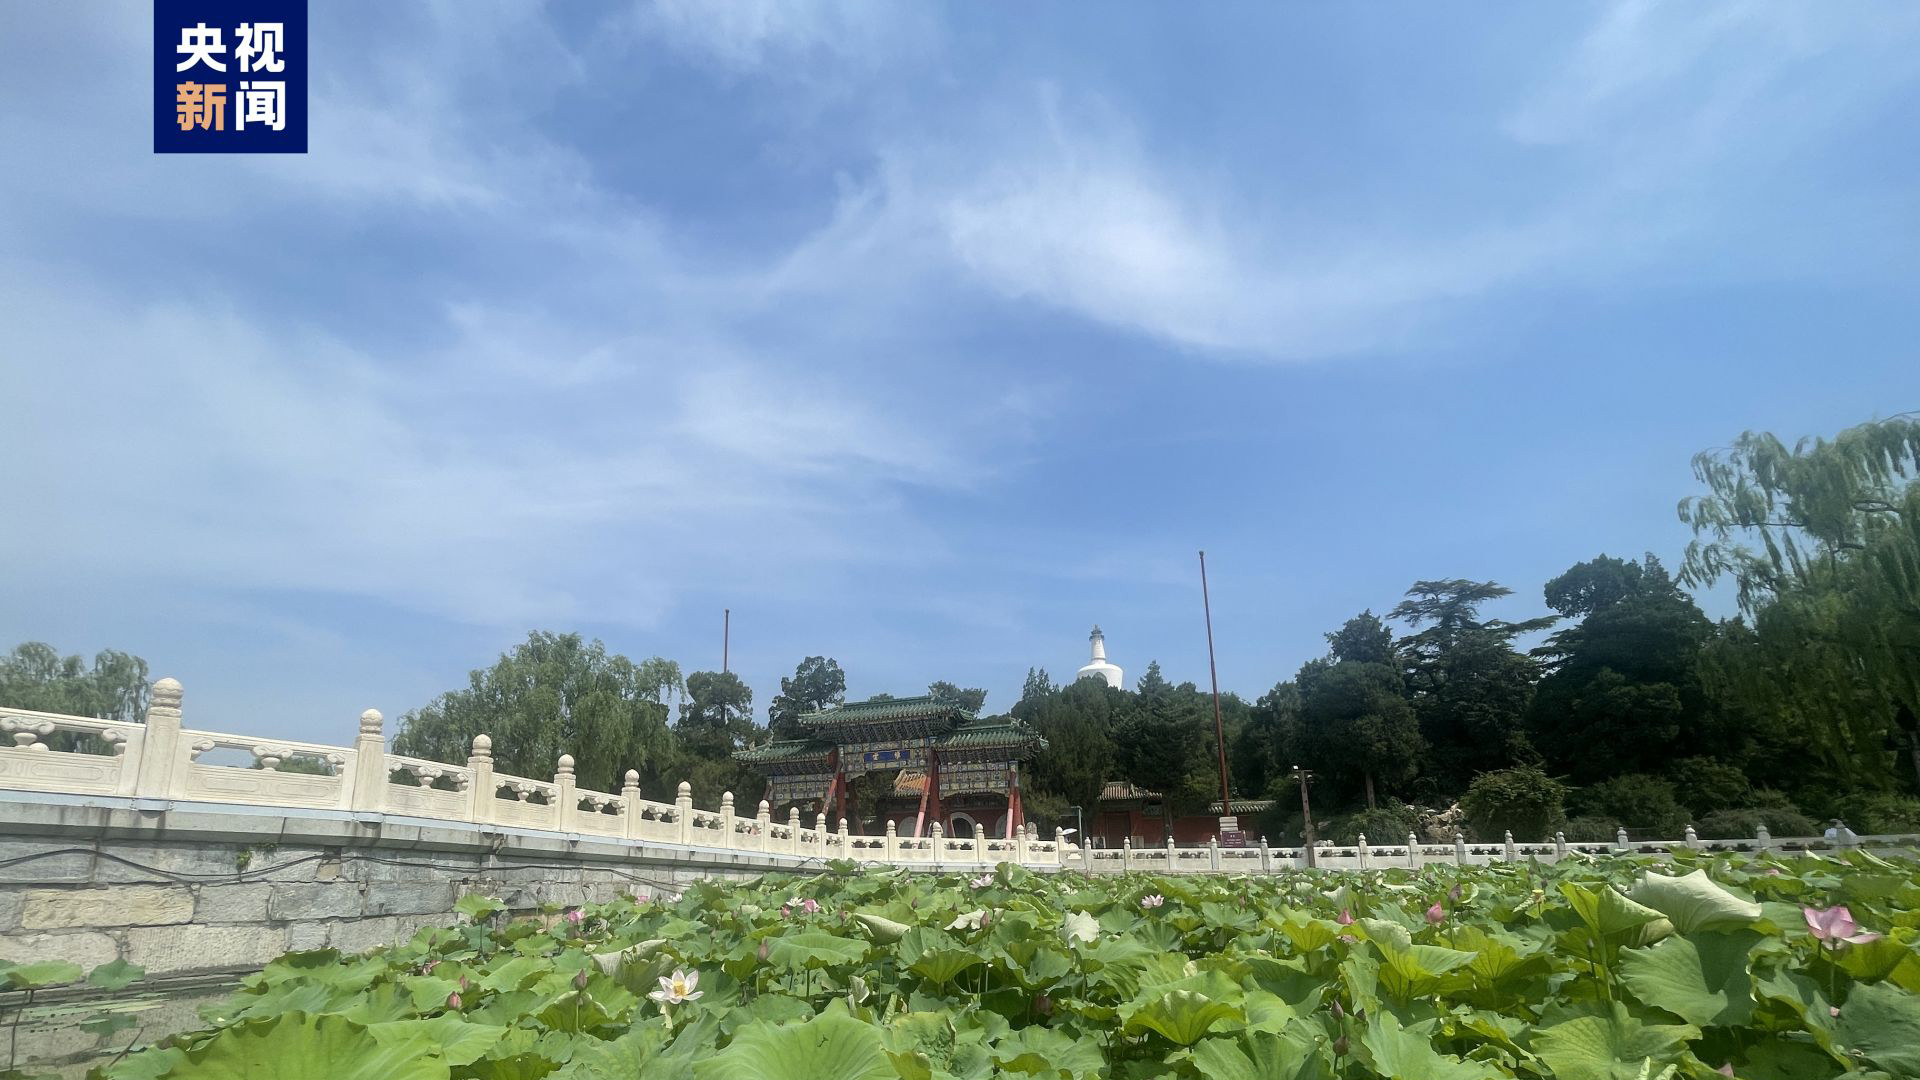 除故宮國博等 北京旅遊景區全面取消預約